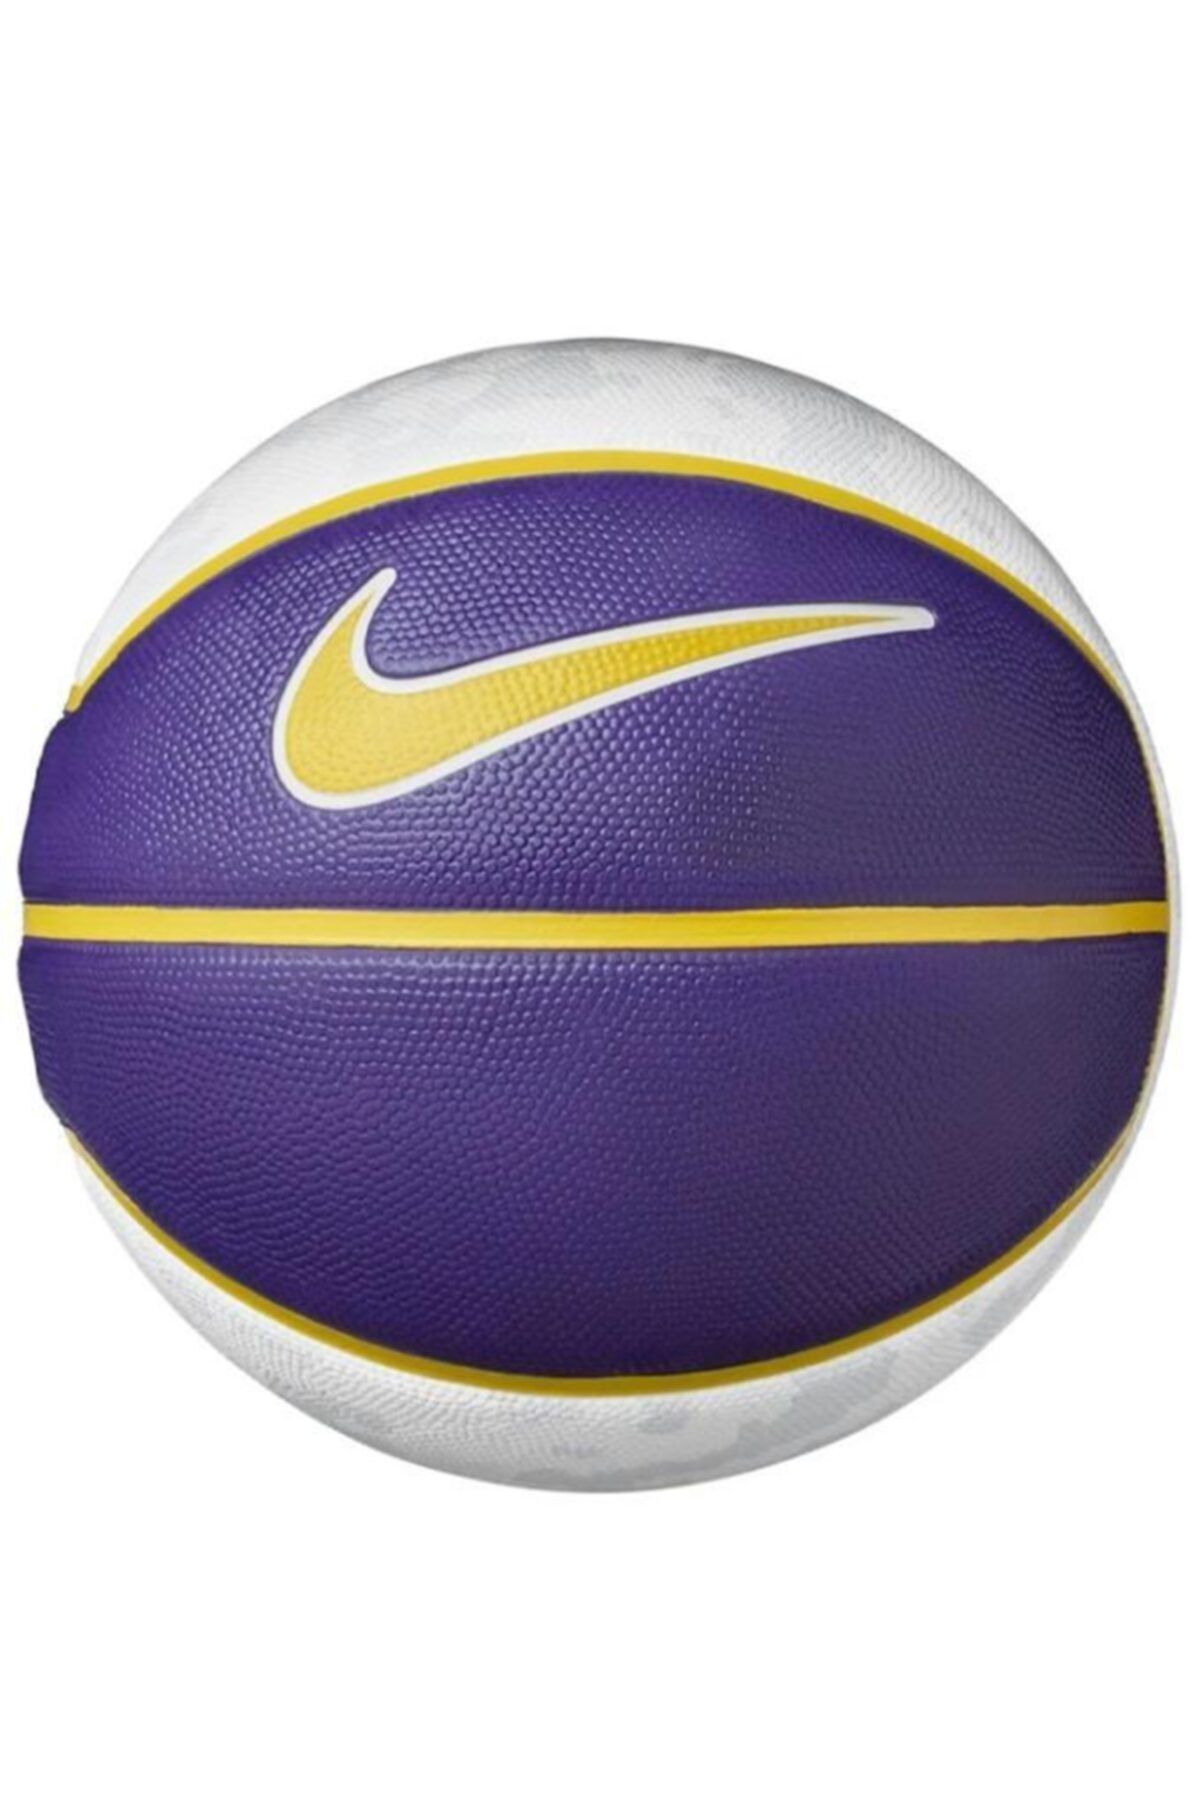 Nike Playground Basketbol Topu No 7 Mor (N.000.2784.936.07)